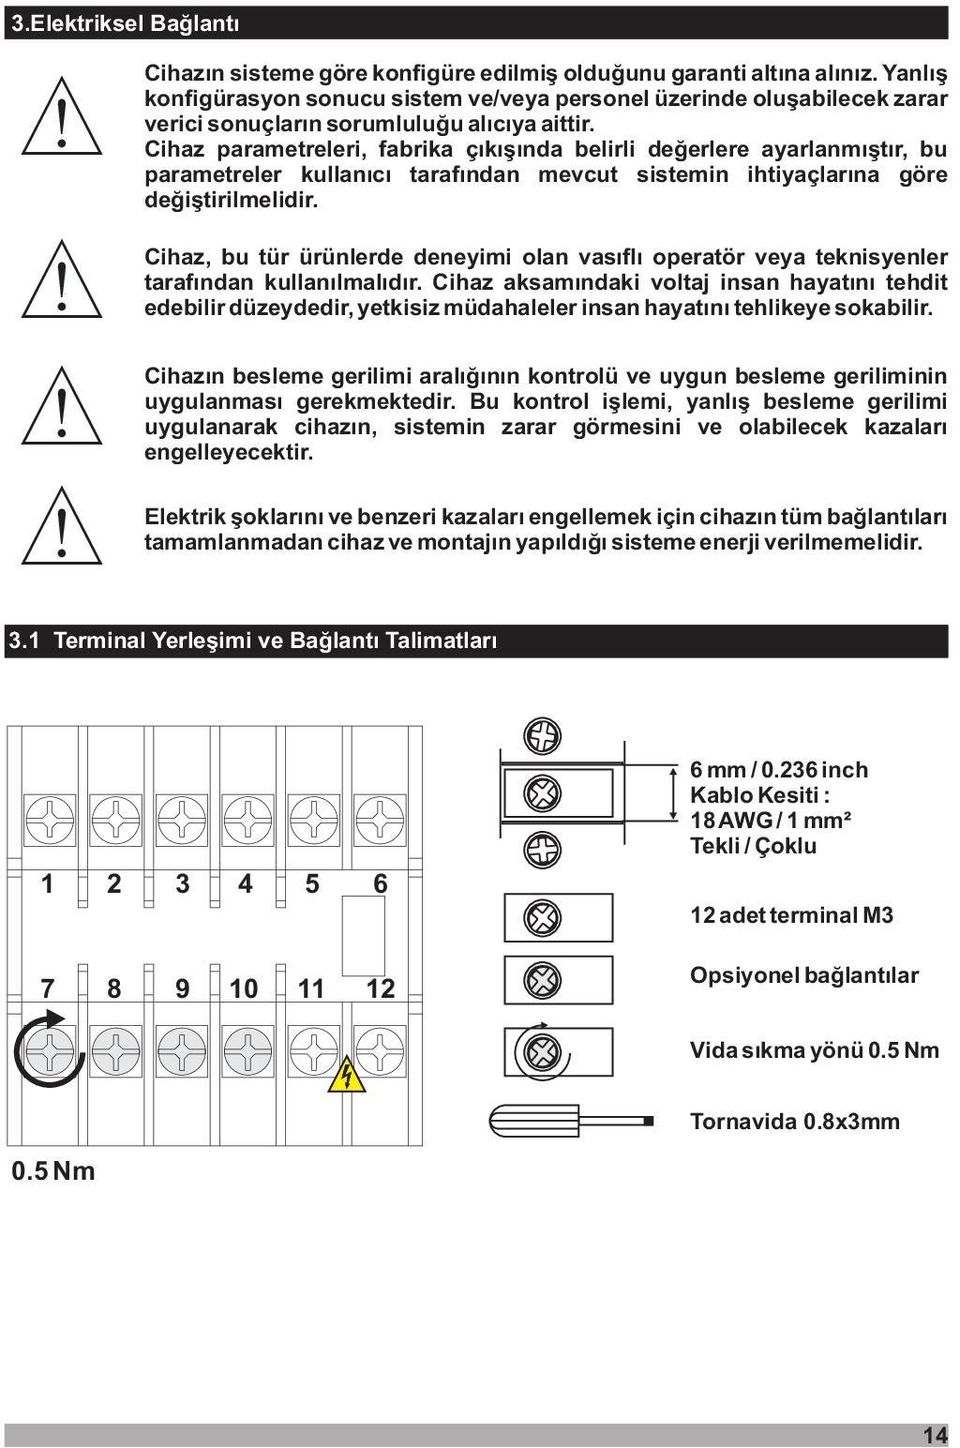 Cihaz parametreleri, fabrika çýkýþýnda belirli deðerlere ayarlanmýþtýr, bu parametreler kullanýcý tarafýndan mevcut sistemin ihtiyaçlarýna göre deðiþtirilmelidir.